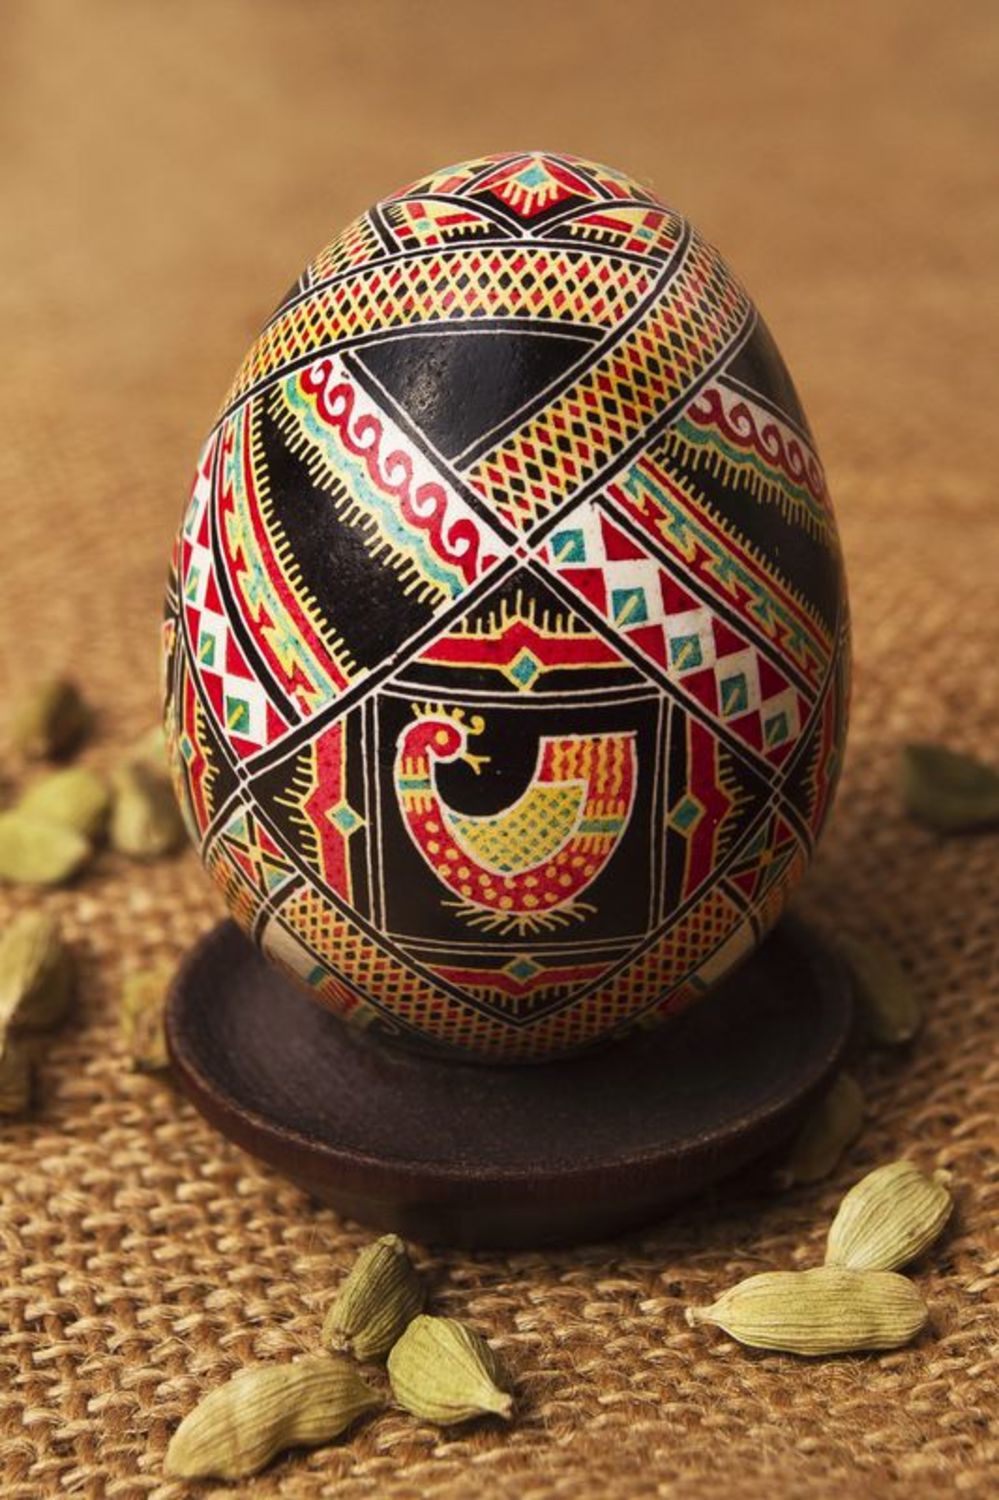 Huevo pintado de Pascua foto 1